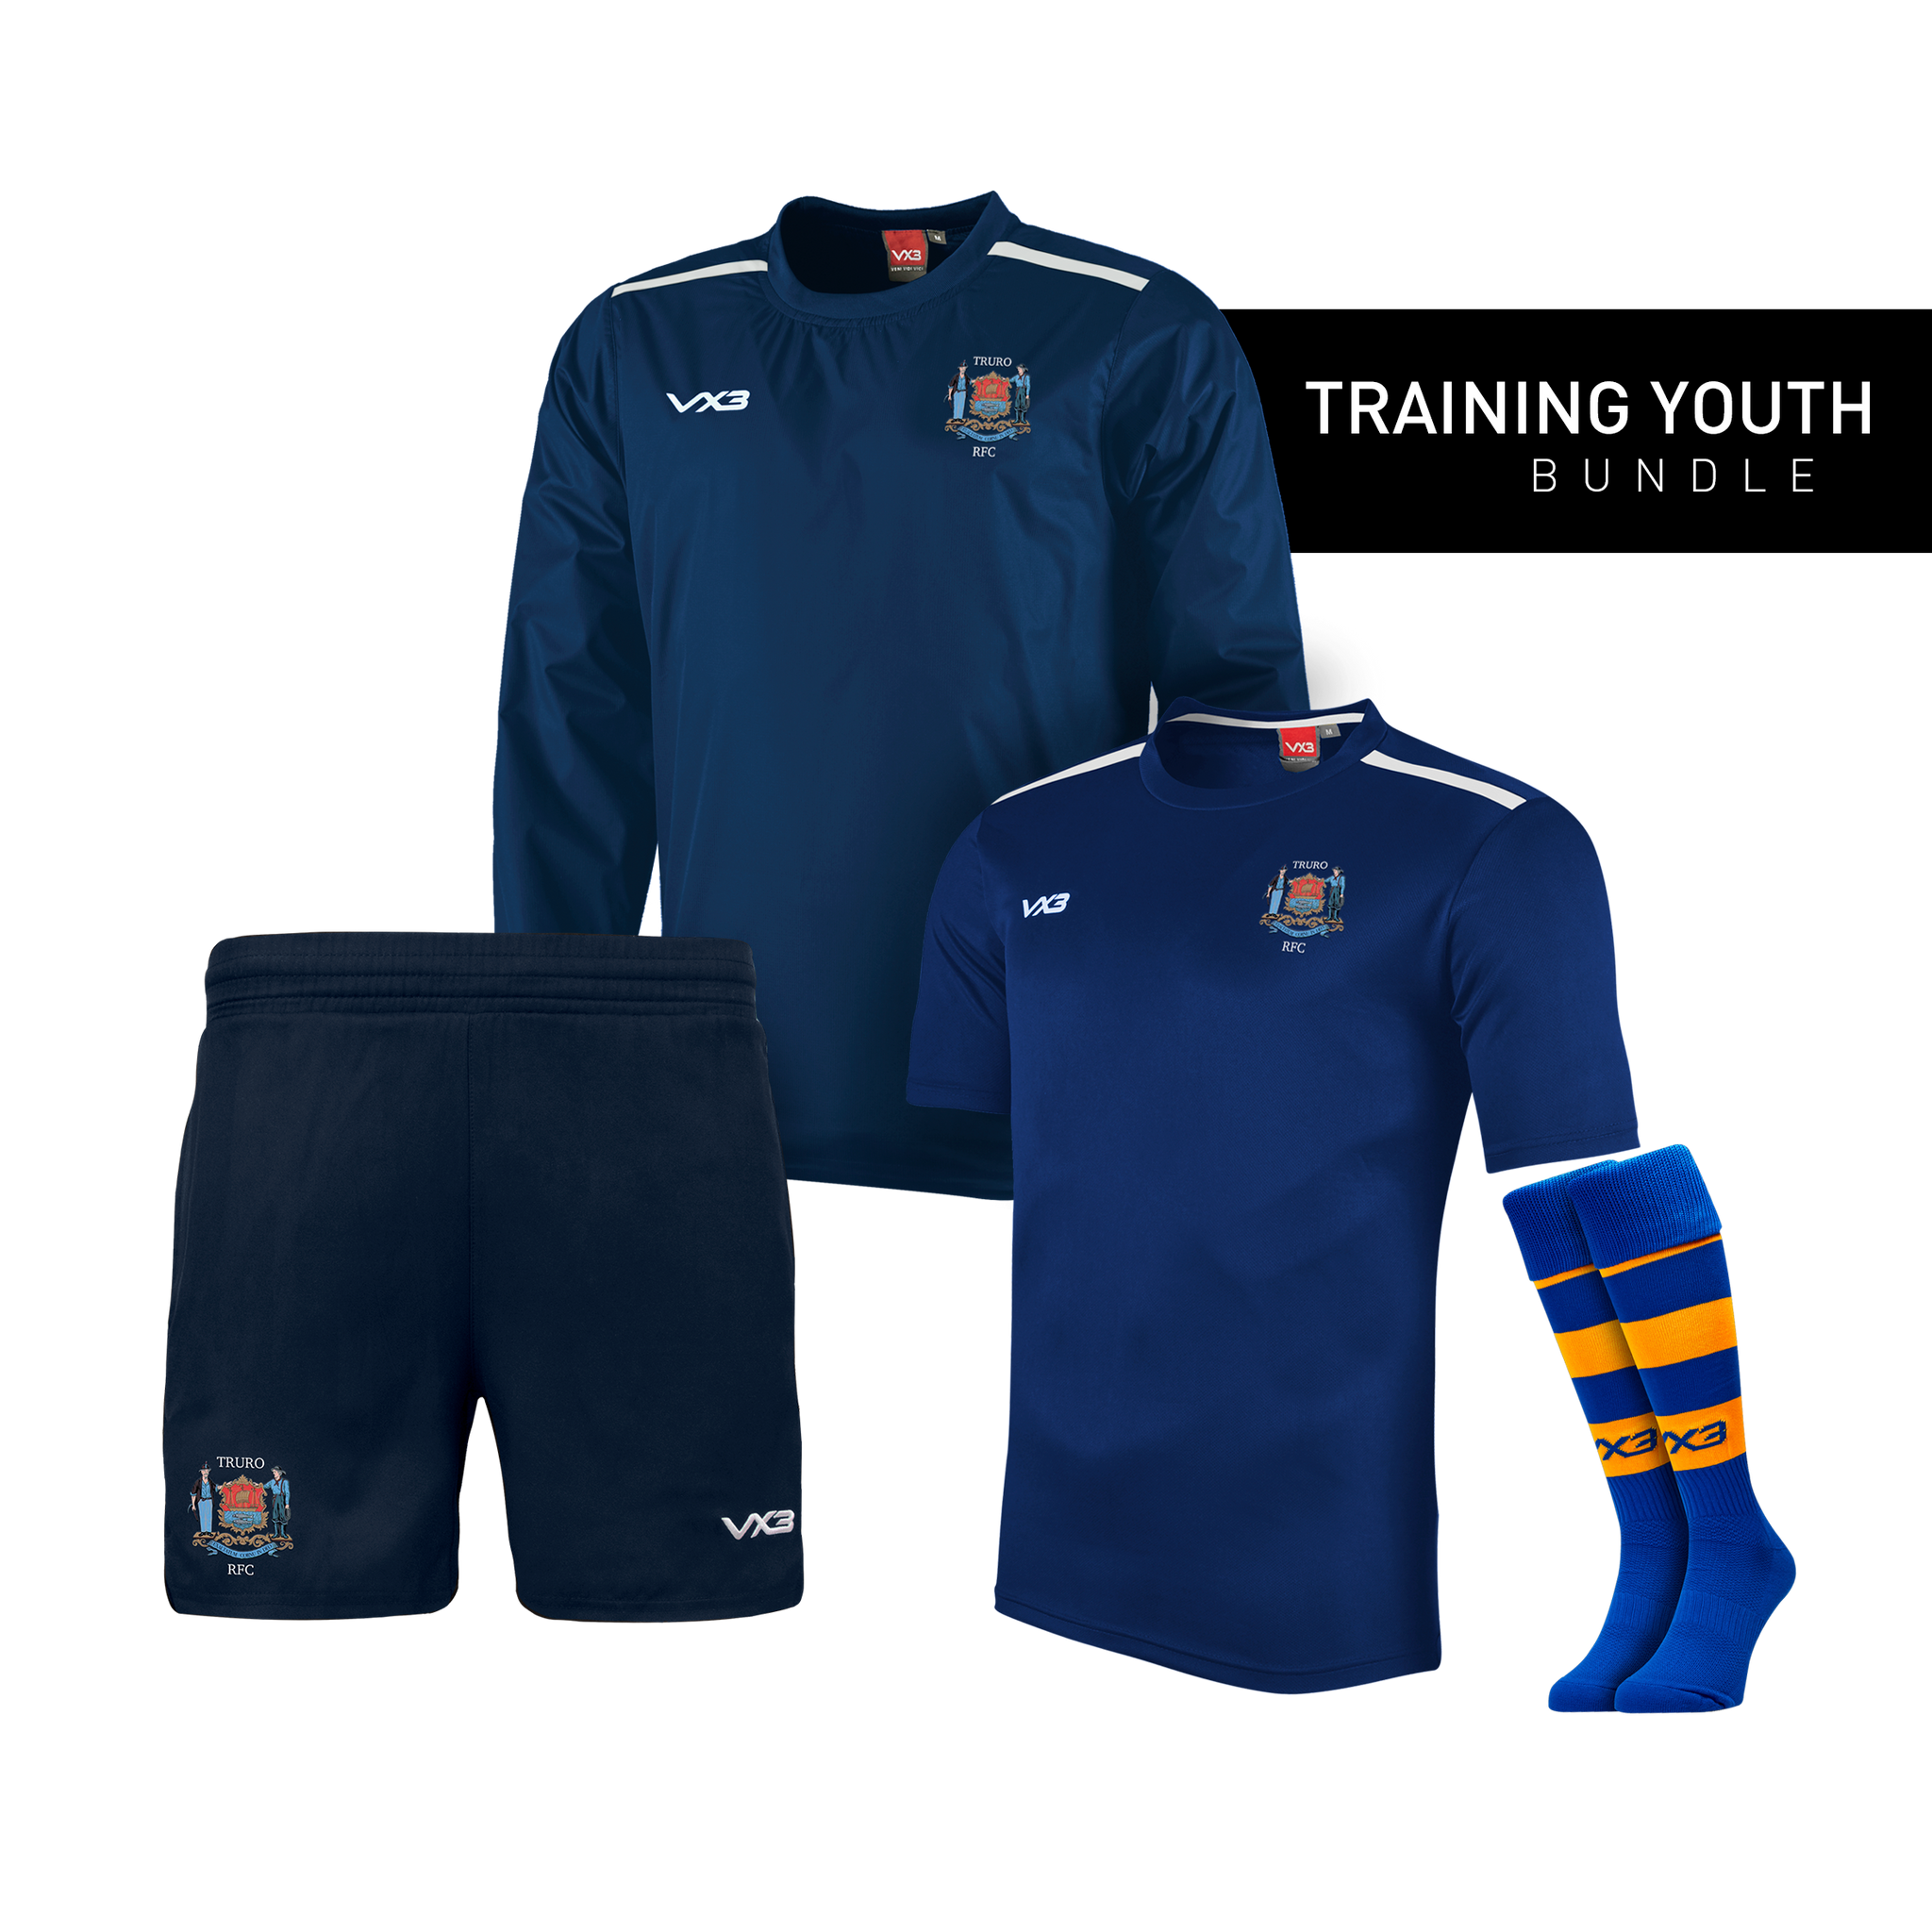 Truro RFC Youth Training Bundle